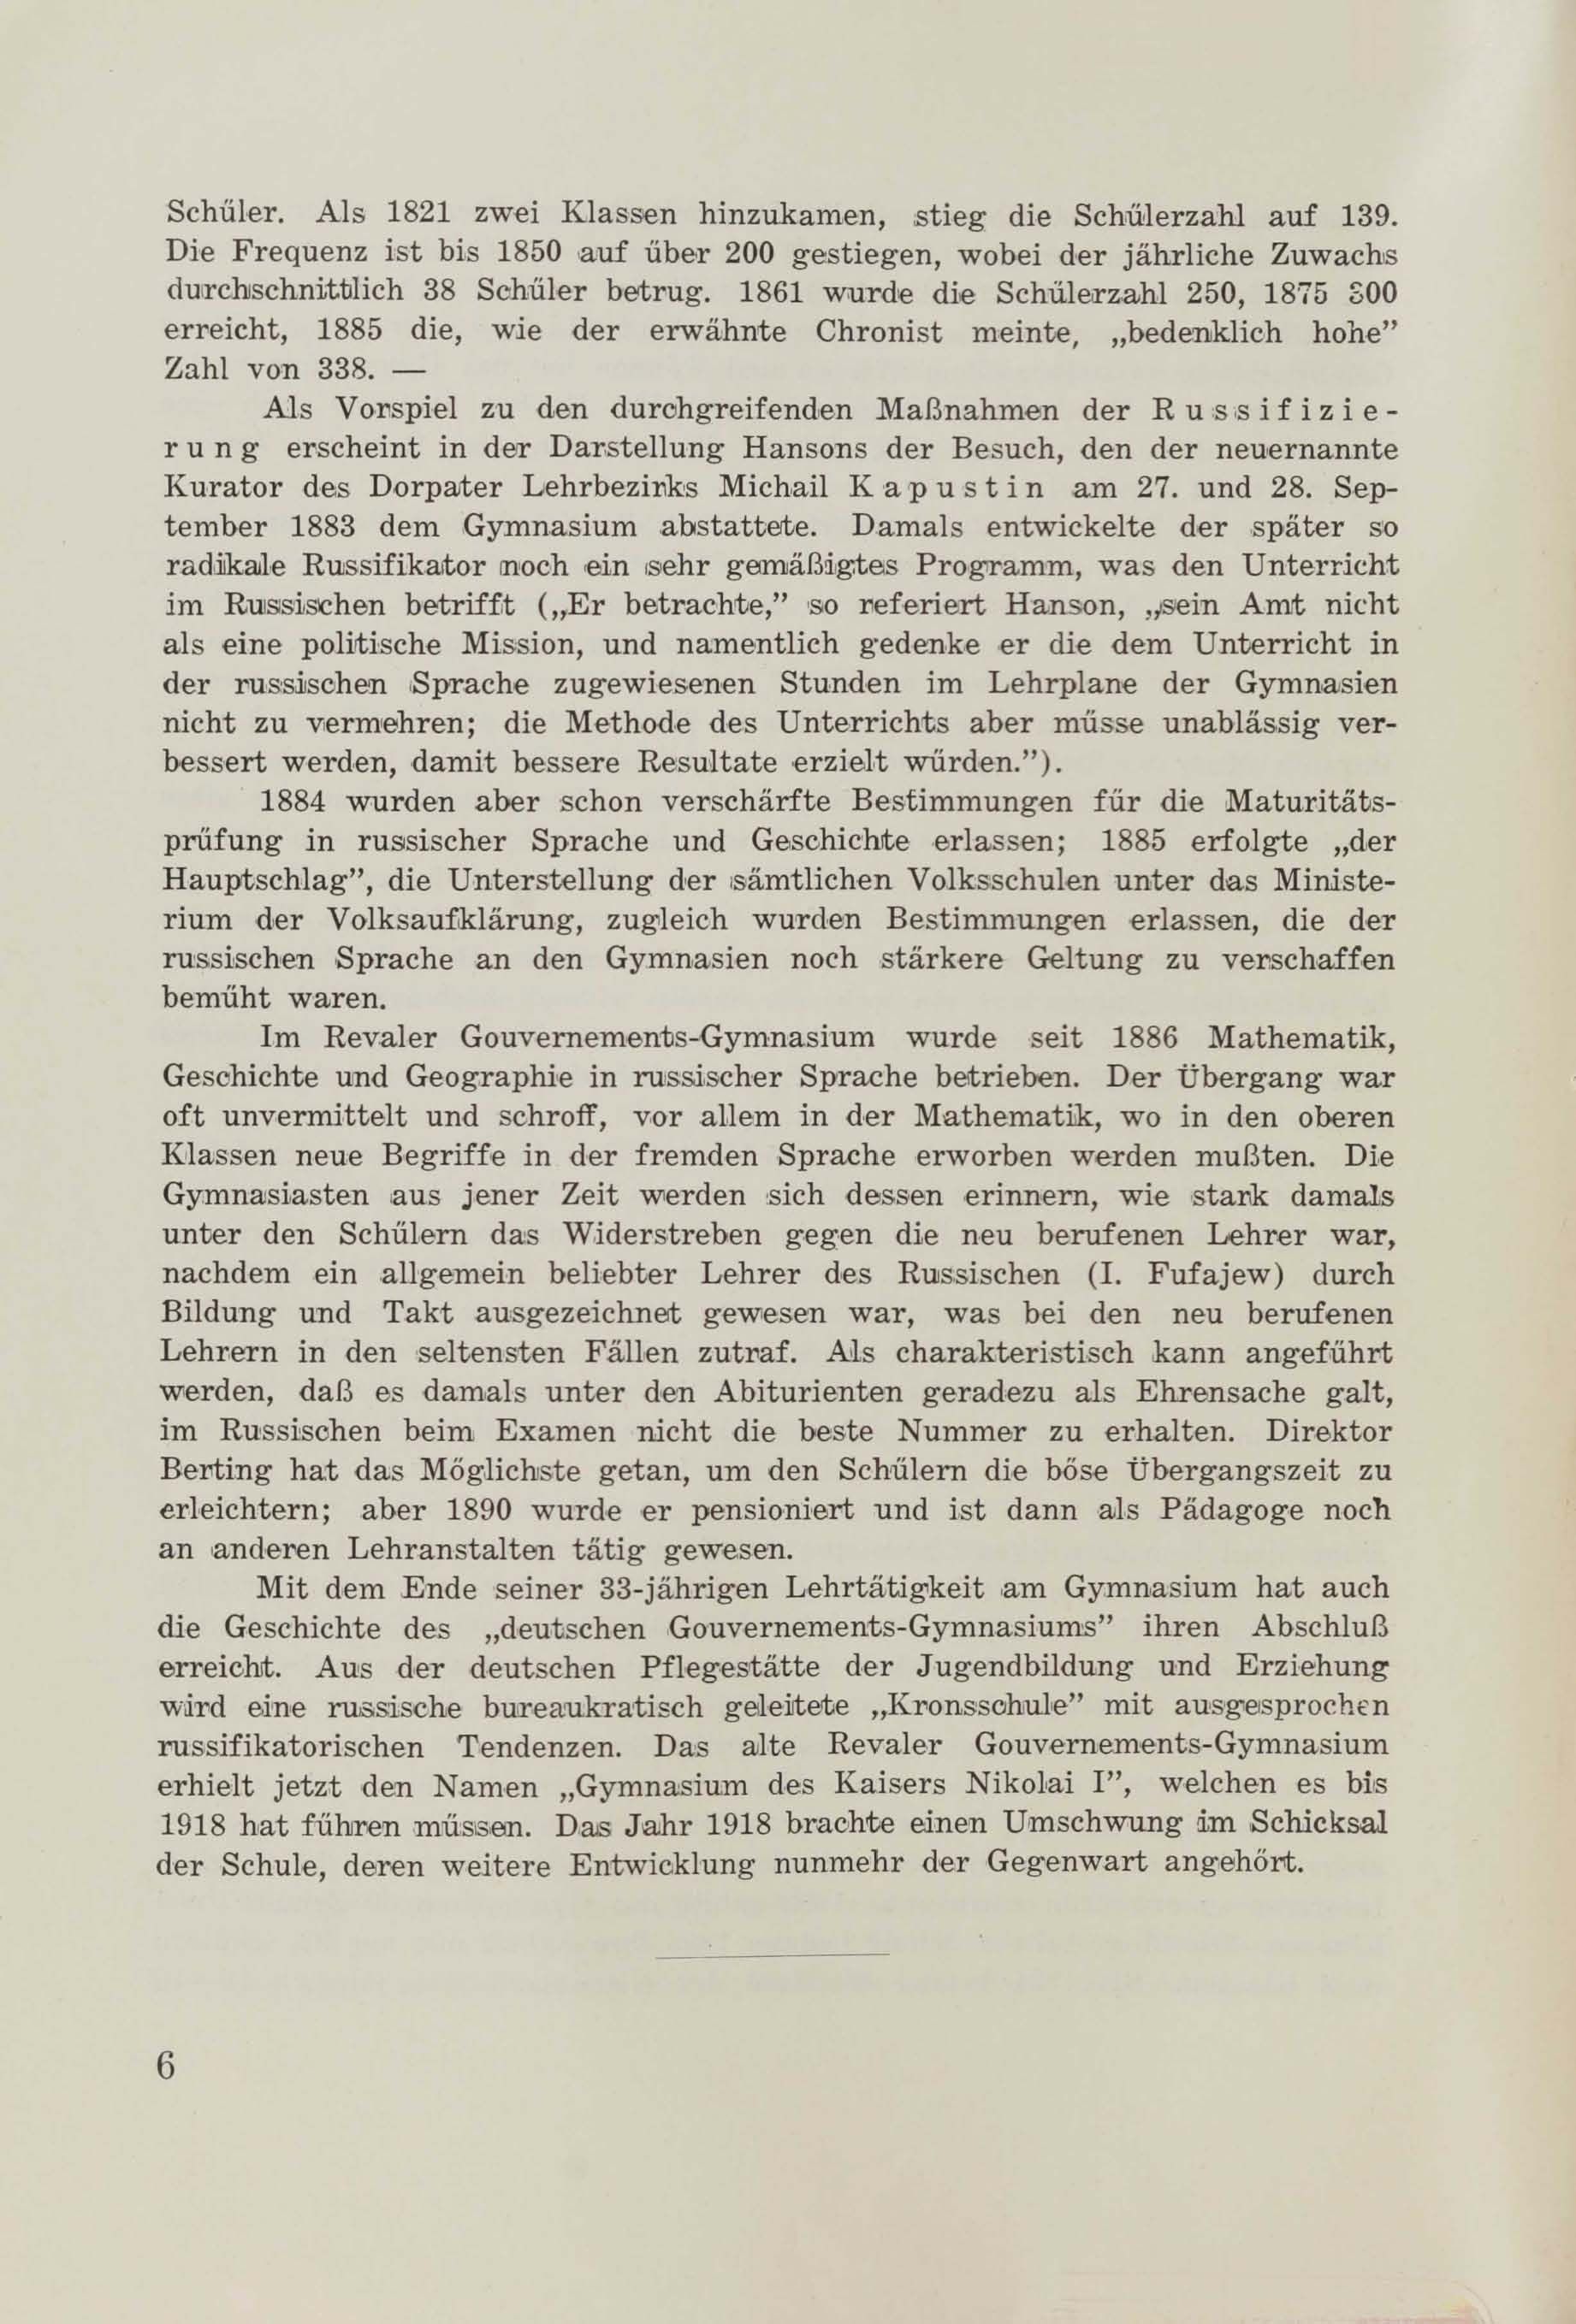 Schüler-Verzeichnis des Revalschen Gouvernements-Gymnasiums 1805–1890 (1931) | 17. (6) Main body of text